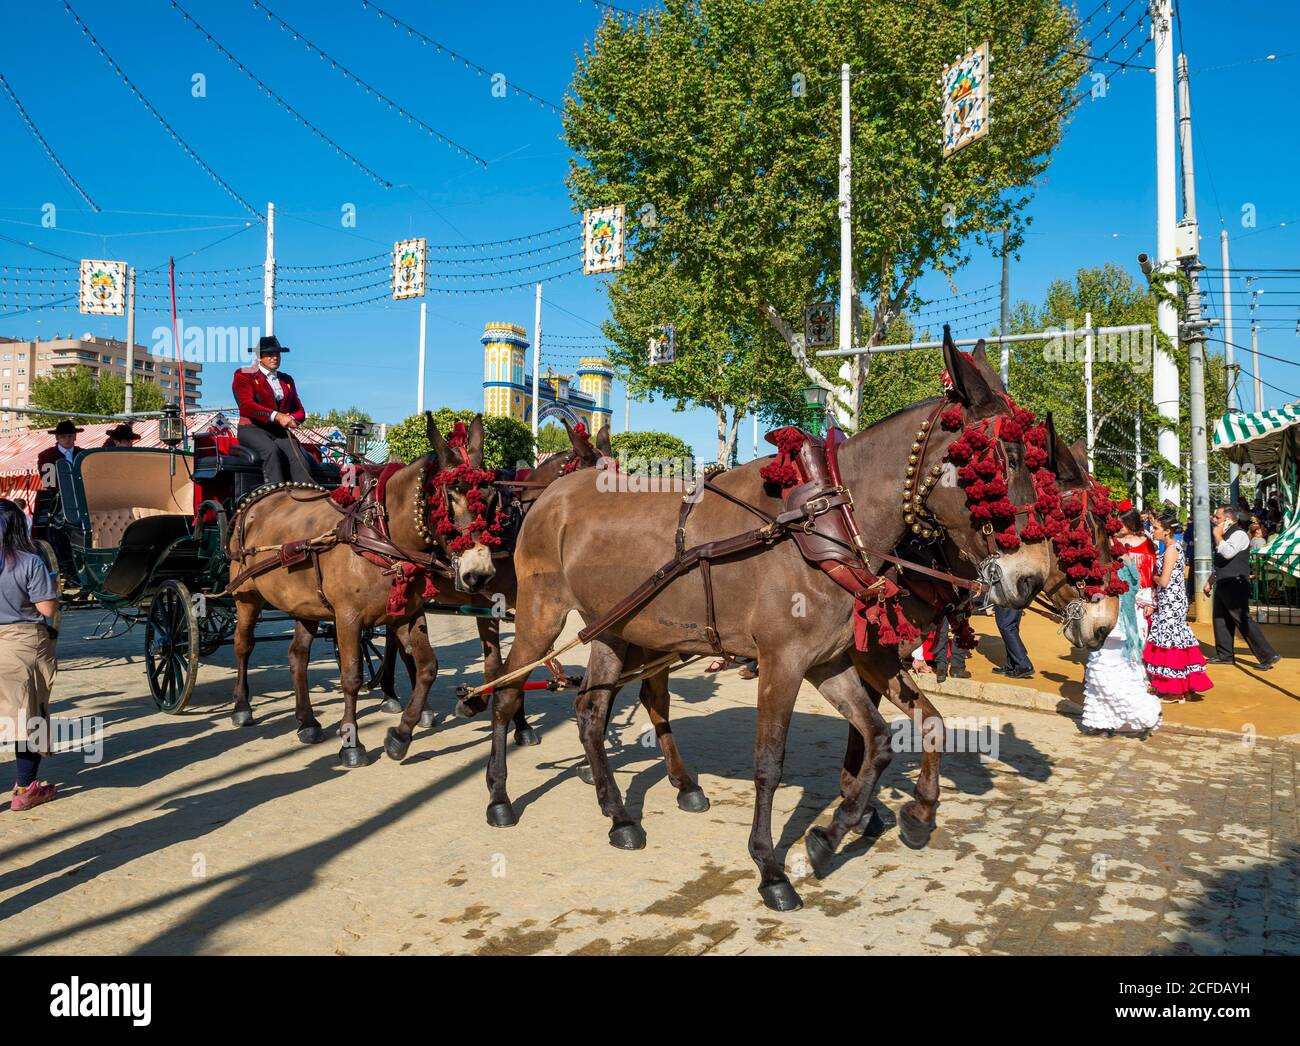 Carrozza trainata da cavalli decorata, quattro in mano, Feria de Abril, Siviglia, Andalusia, Spagna Foto Stock